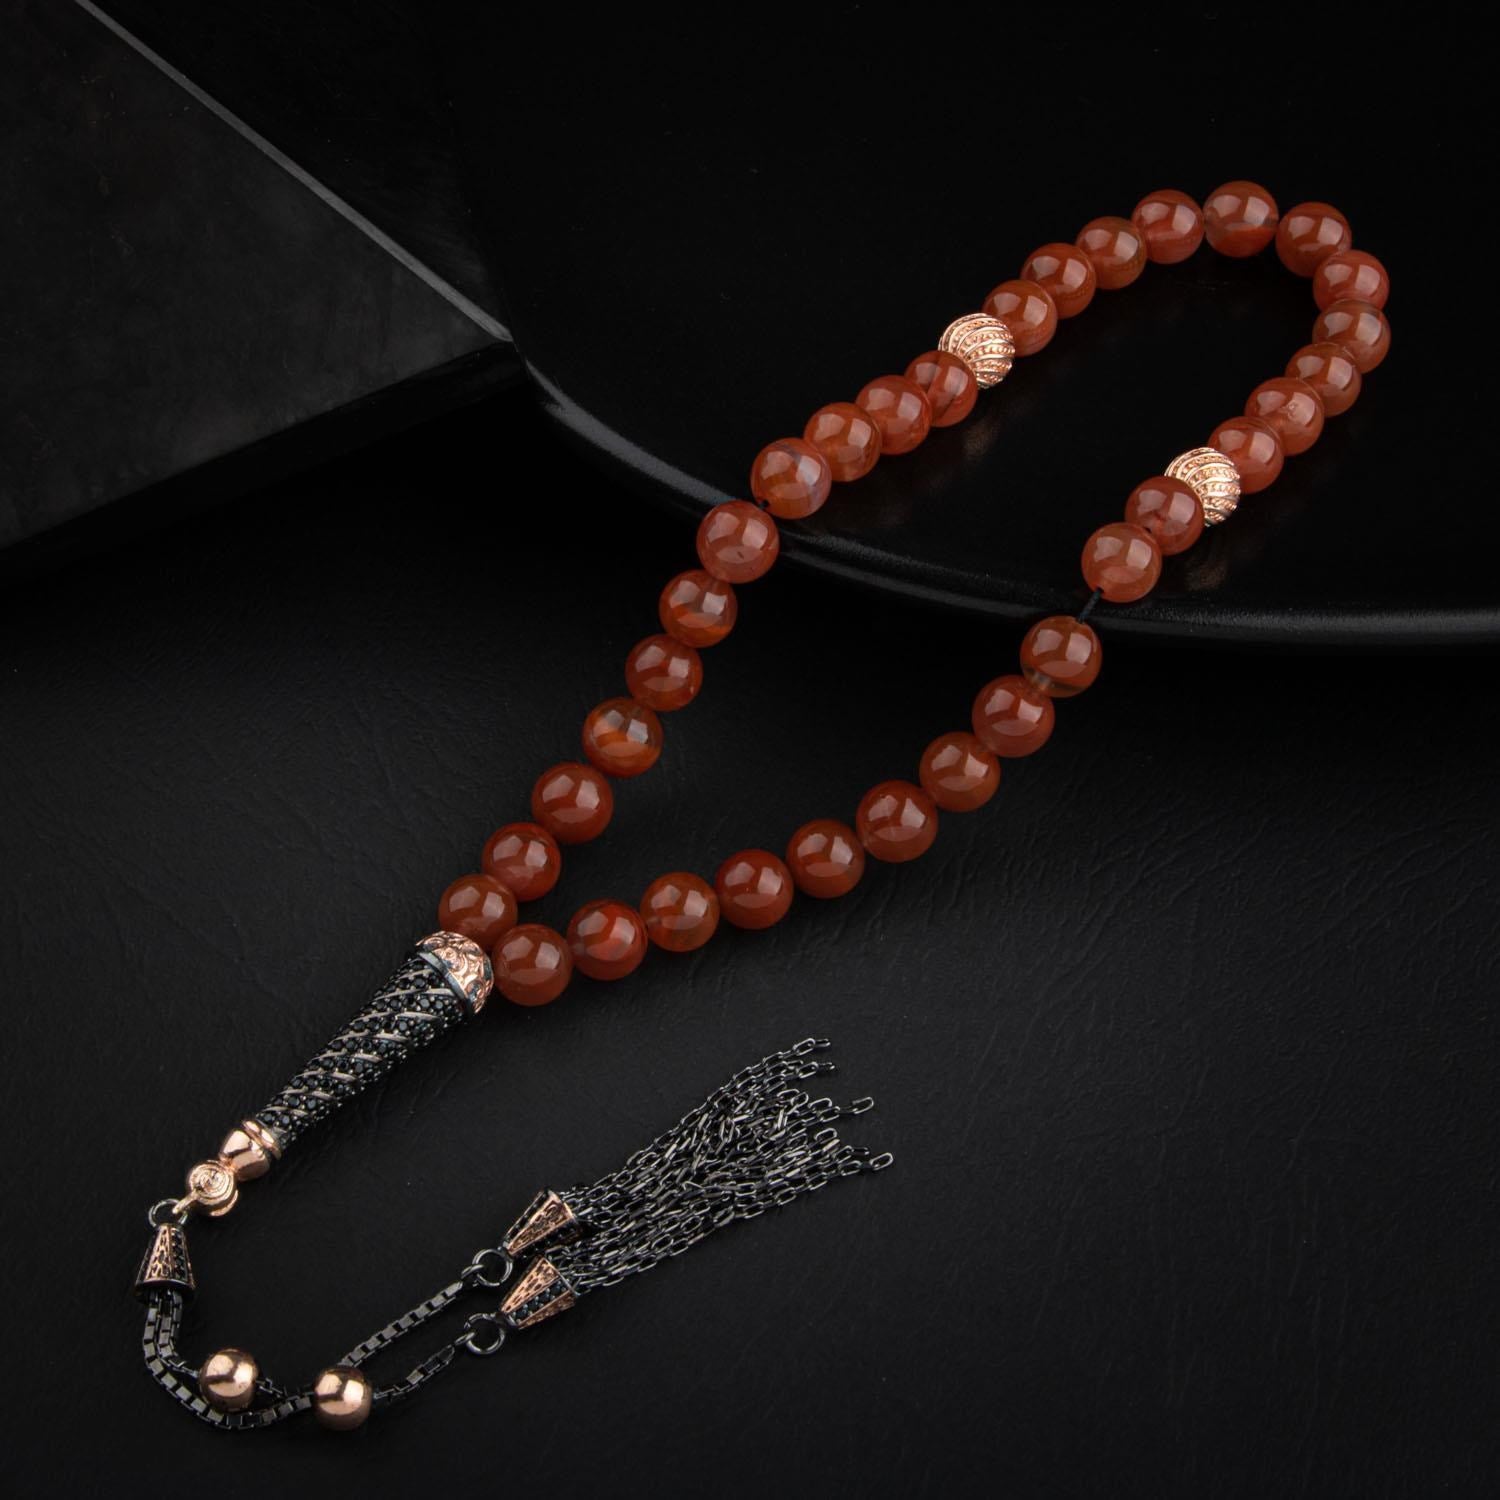 Yemen Agate Gemstone Prayer Beads - 8mm /33pc